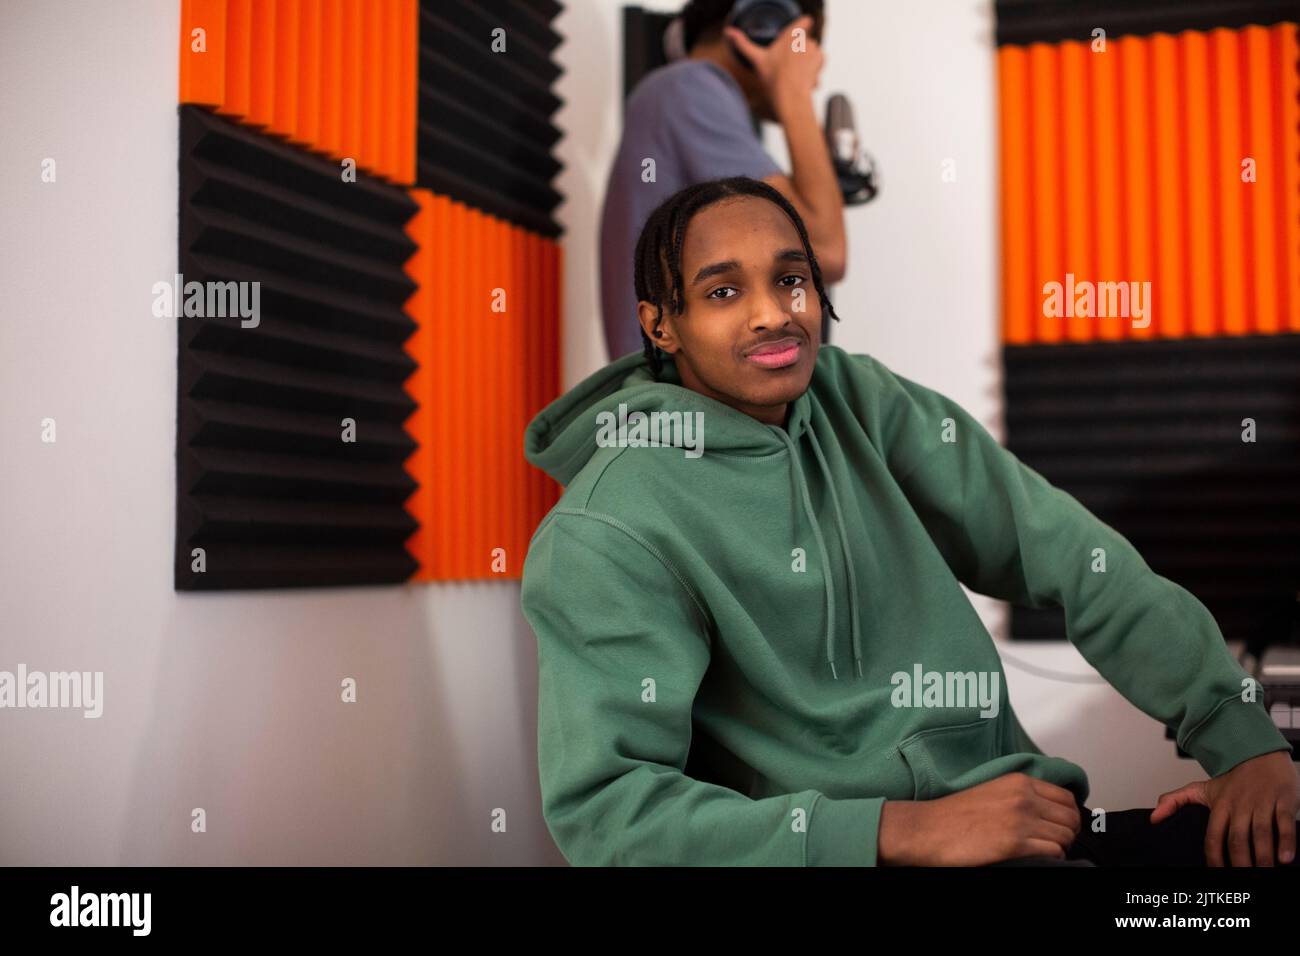 Junge mit grünem Hoodie sitzt im Aufnahmestudio Stockfoto